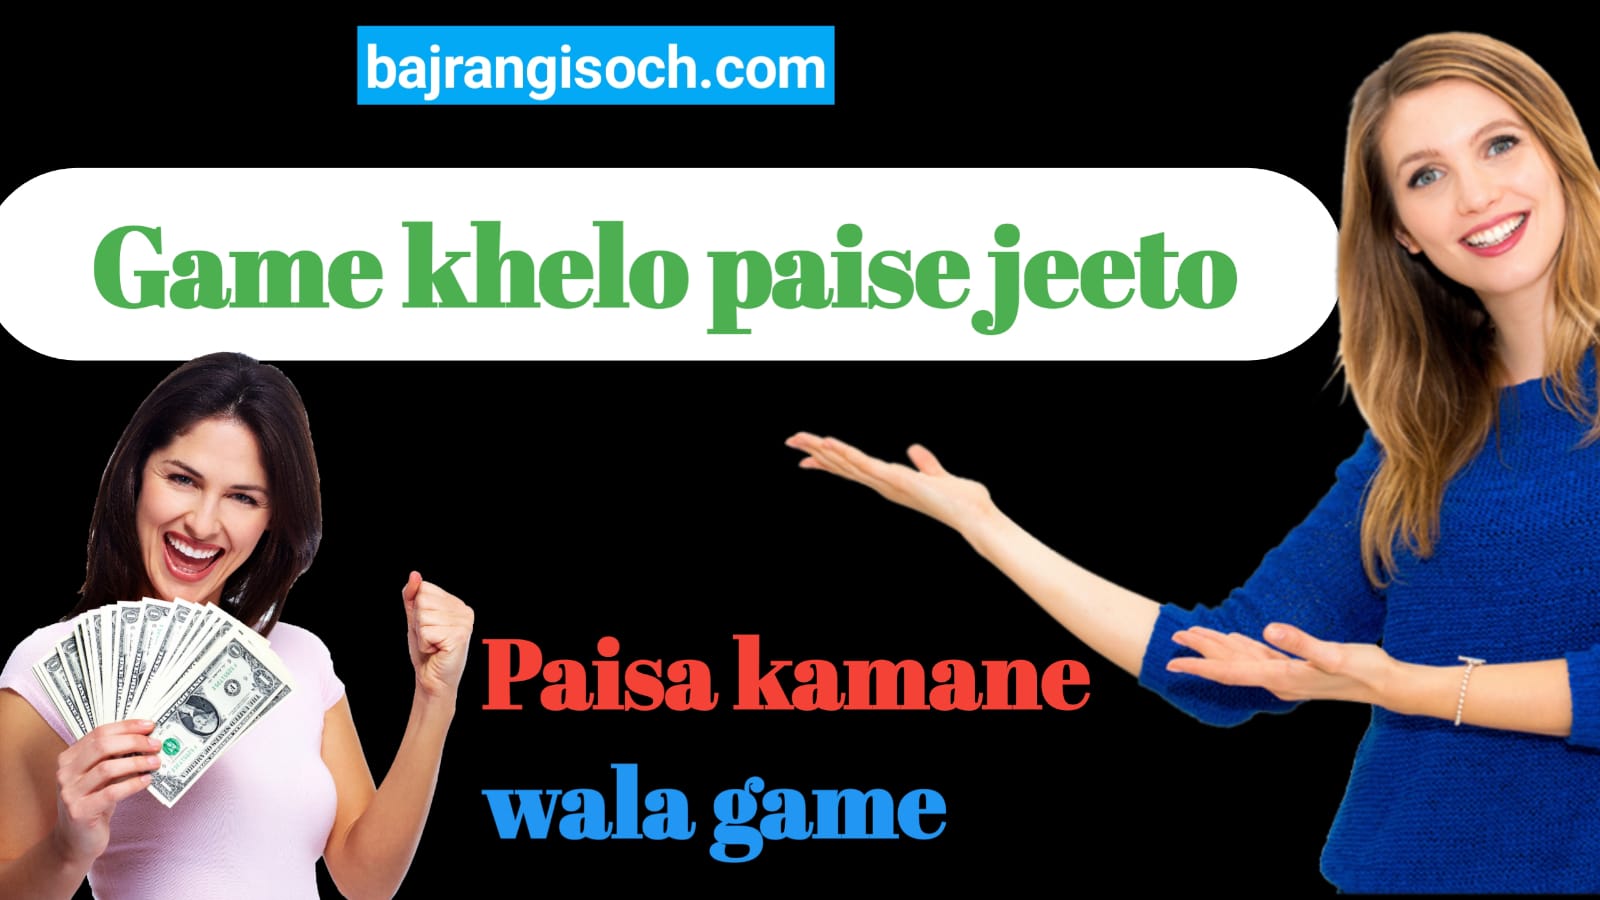 Paisa kamane wala game